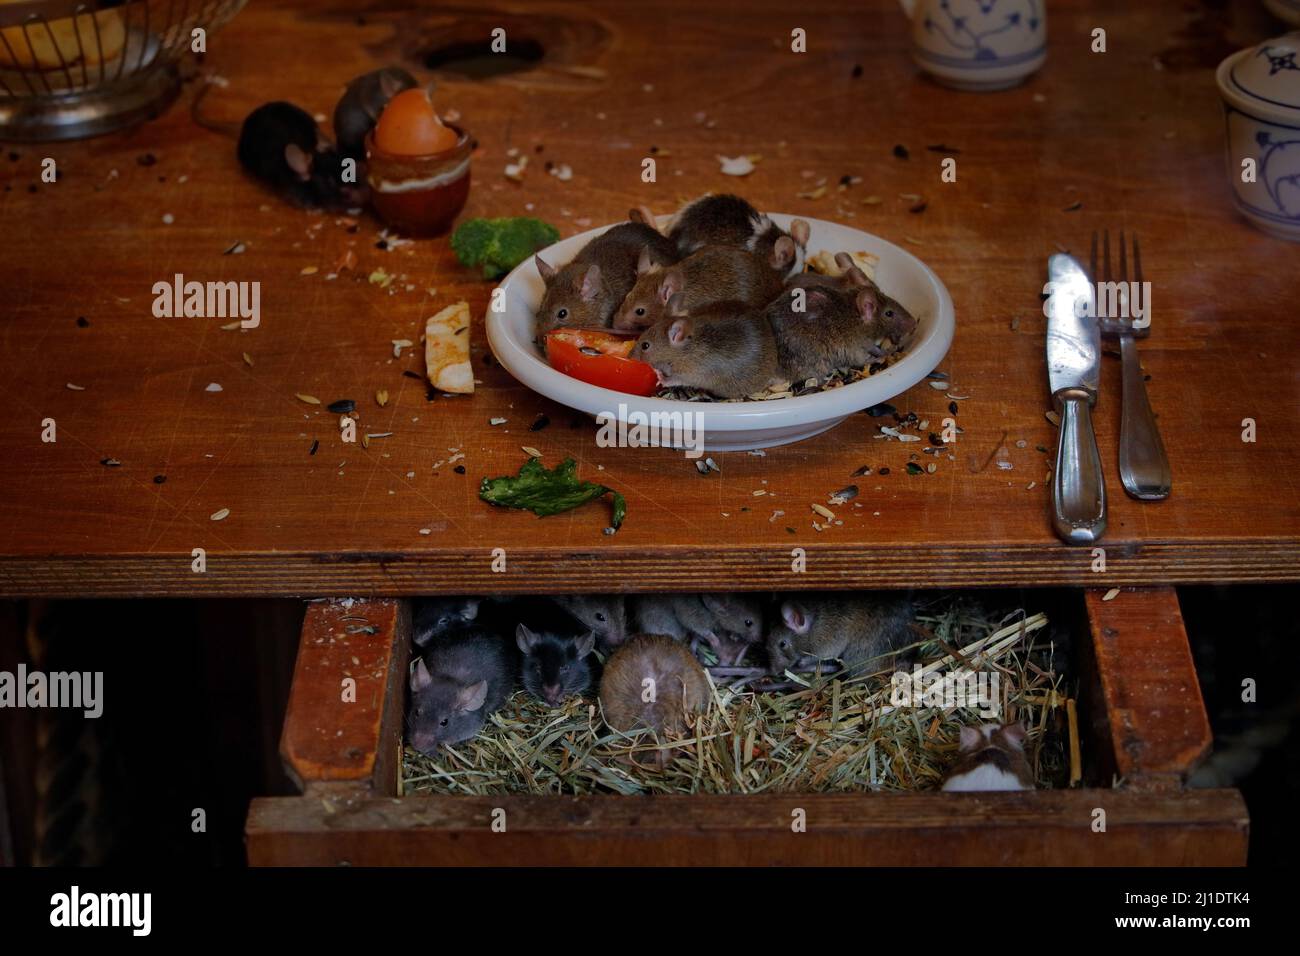 Maus an der Hausküche. Rattenmaus, Rattus norvegicus, isst Nahrung Rest Müll von schmutzigen Teller Geschirr, Tier bahaviour im Gebäude. Urbane Tierwelt i Stockfoto